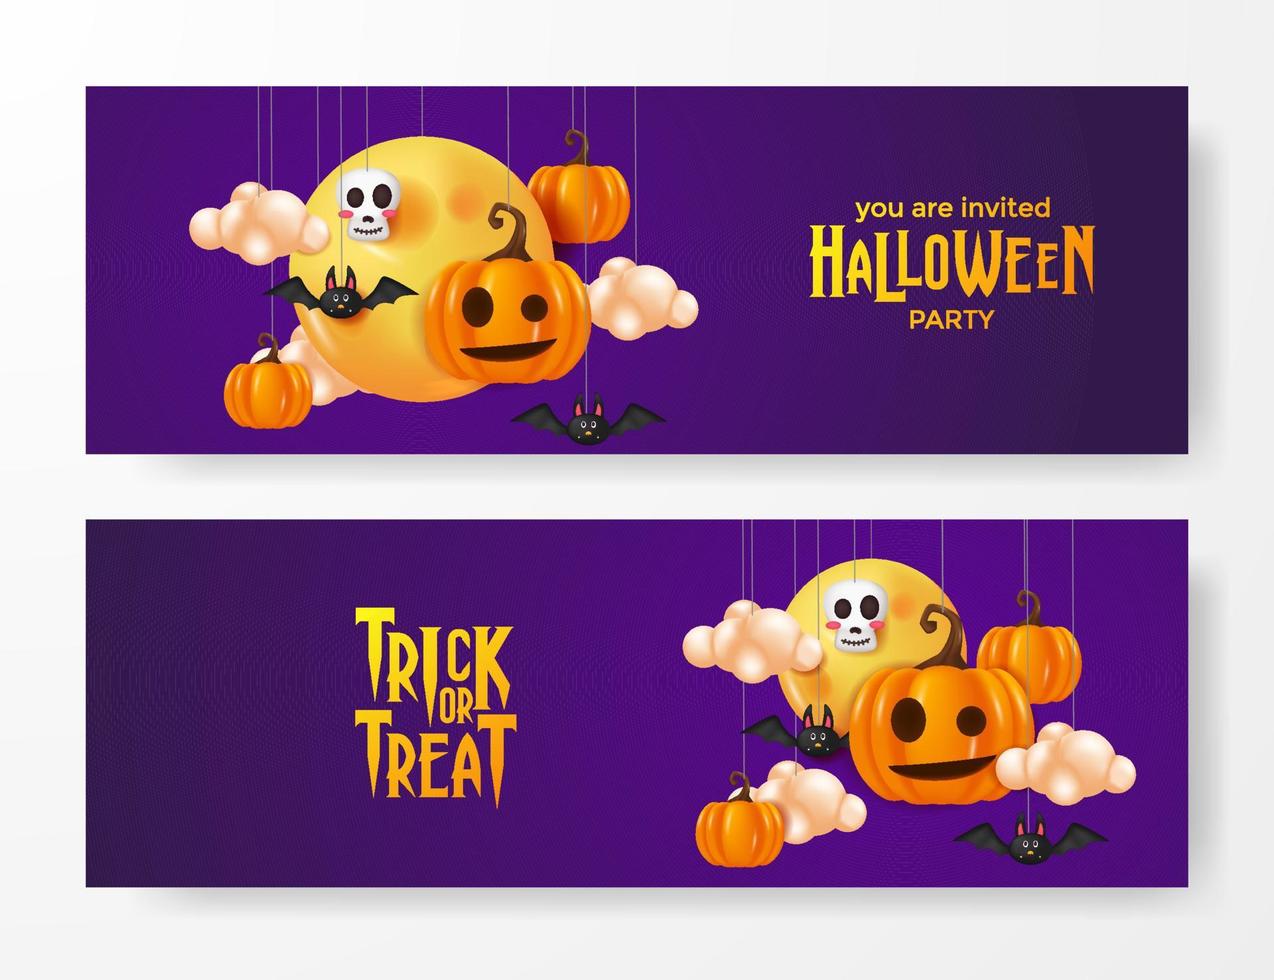 elemento decorativo fantasma jack o lantern illustrazione carina con sfondo viola per invito a una festa di halloween vettore